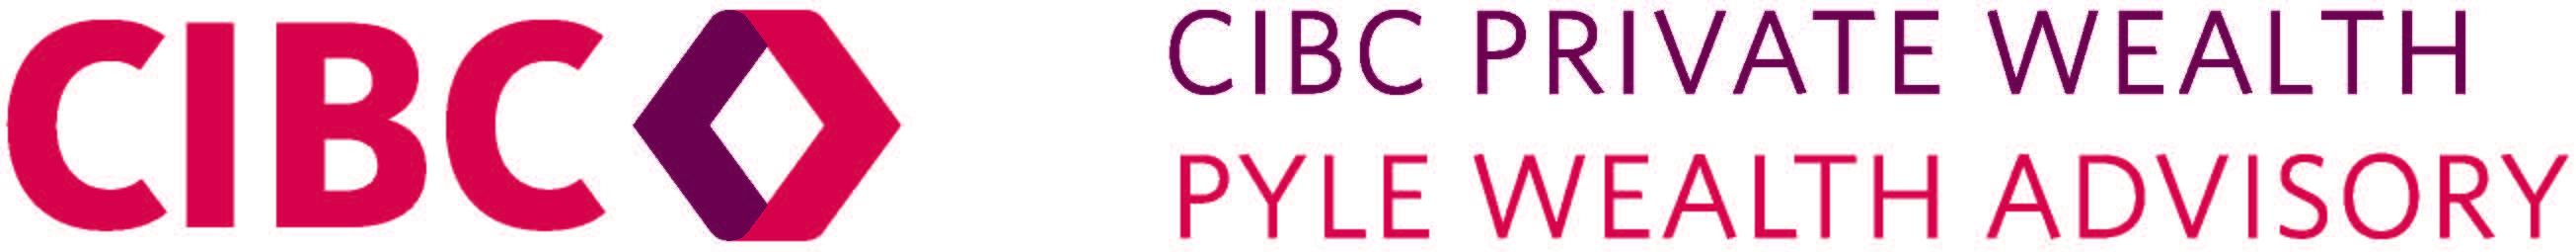 CIBC Private Wealth - Pyle Wealth Advisory Logo